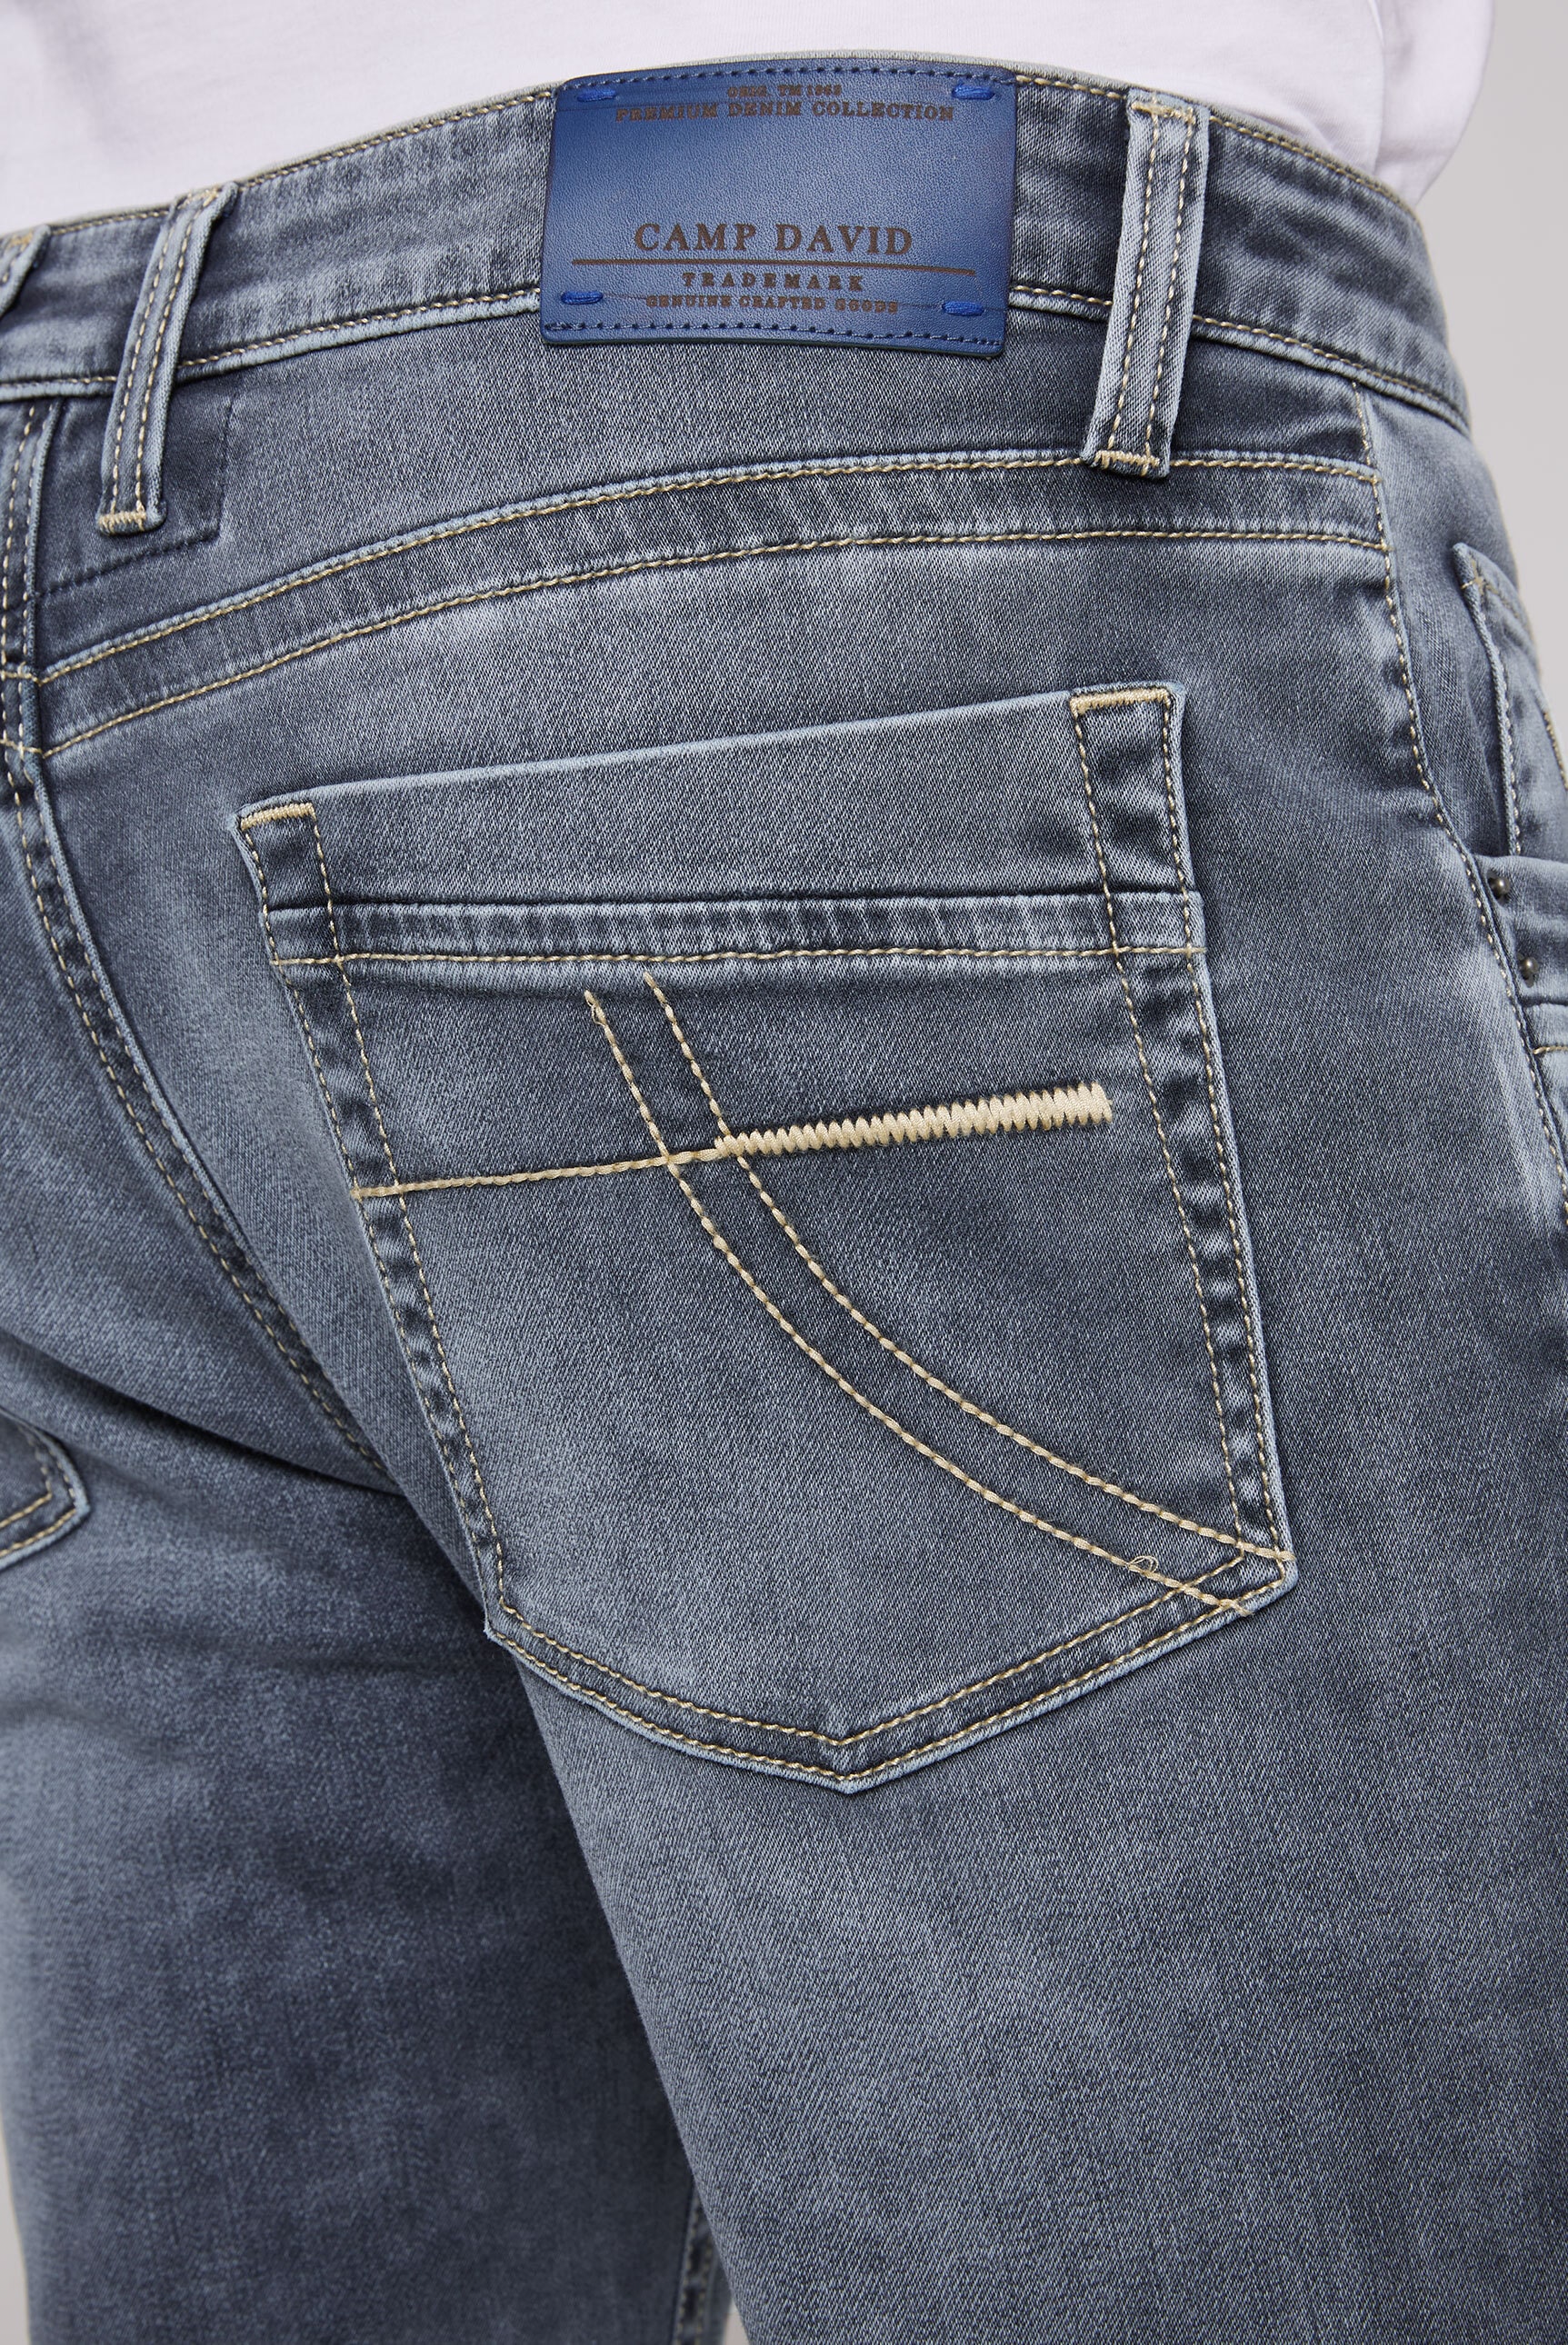 CAMP mit Regular-fit-Jeans, für Verschluss | DAVID BAUR ▷ Knopfleiste